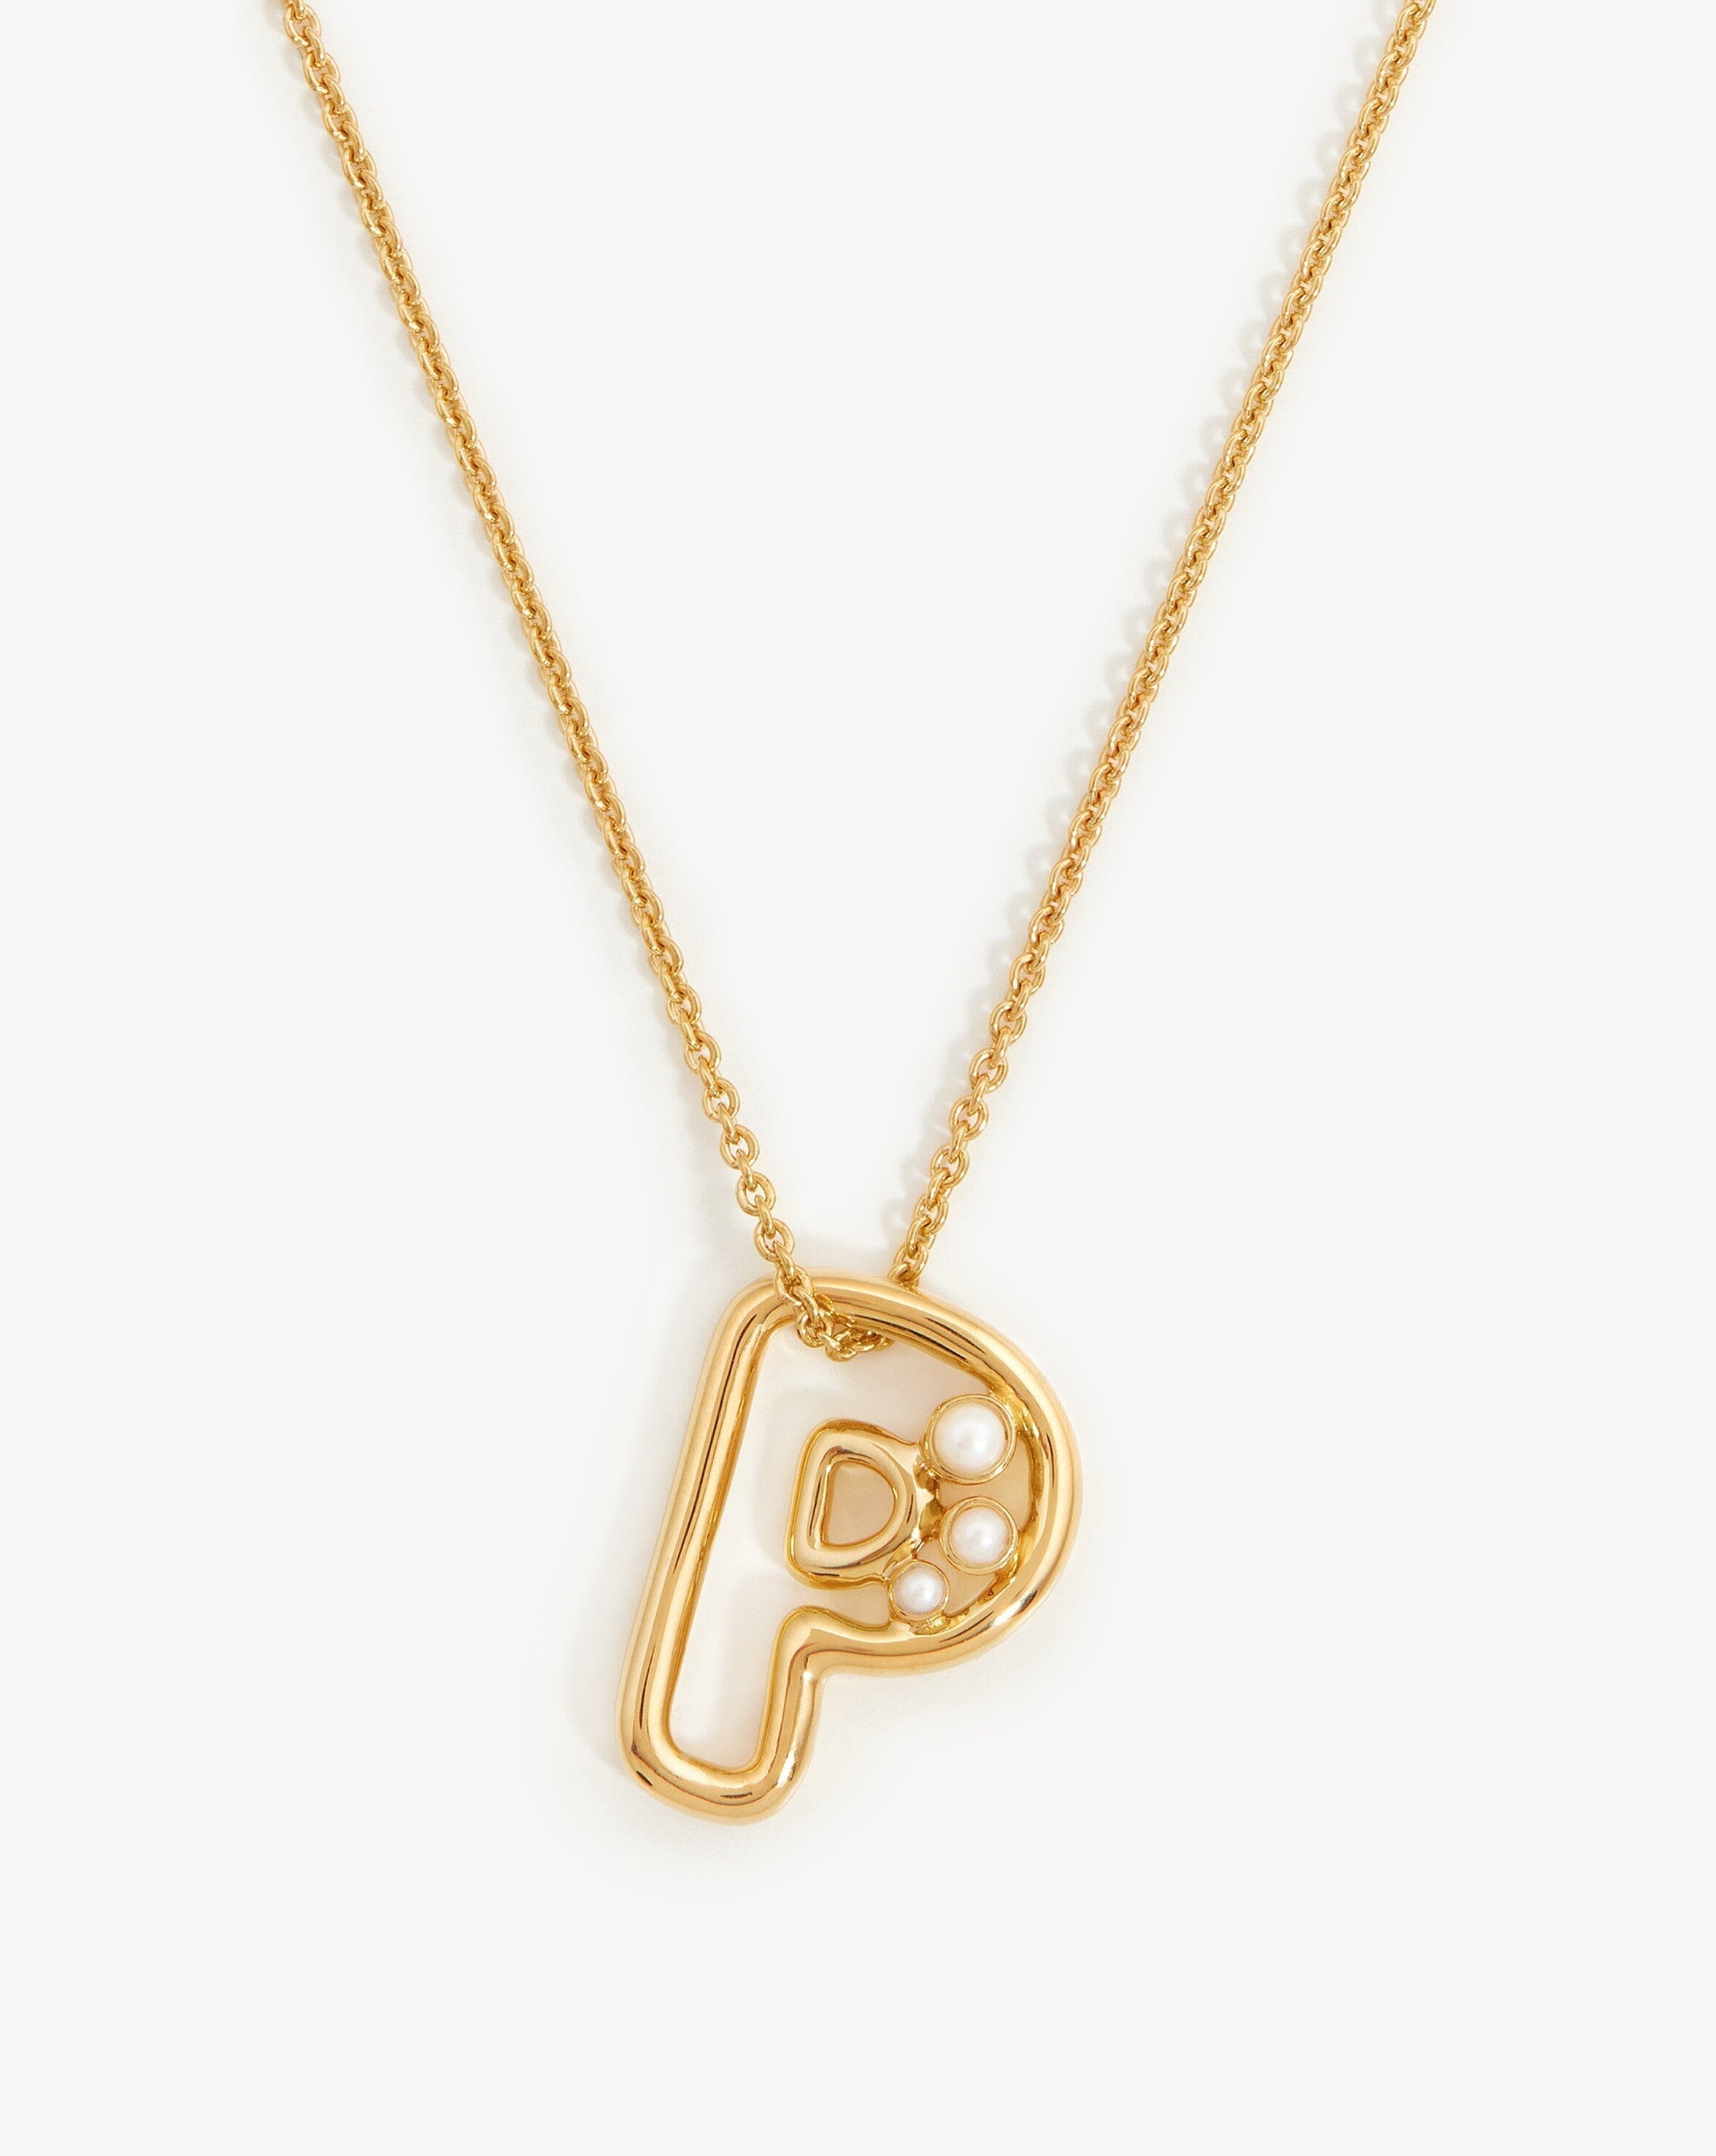 The Key Necklace - Gold Vermeil